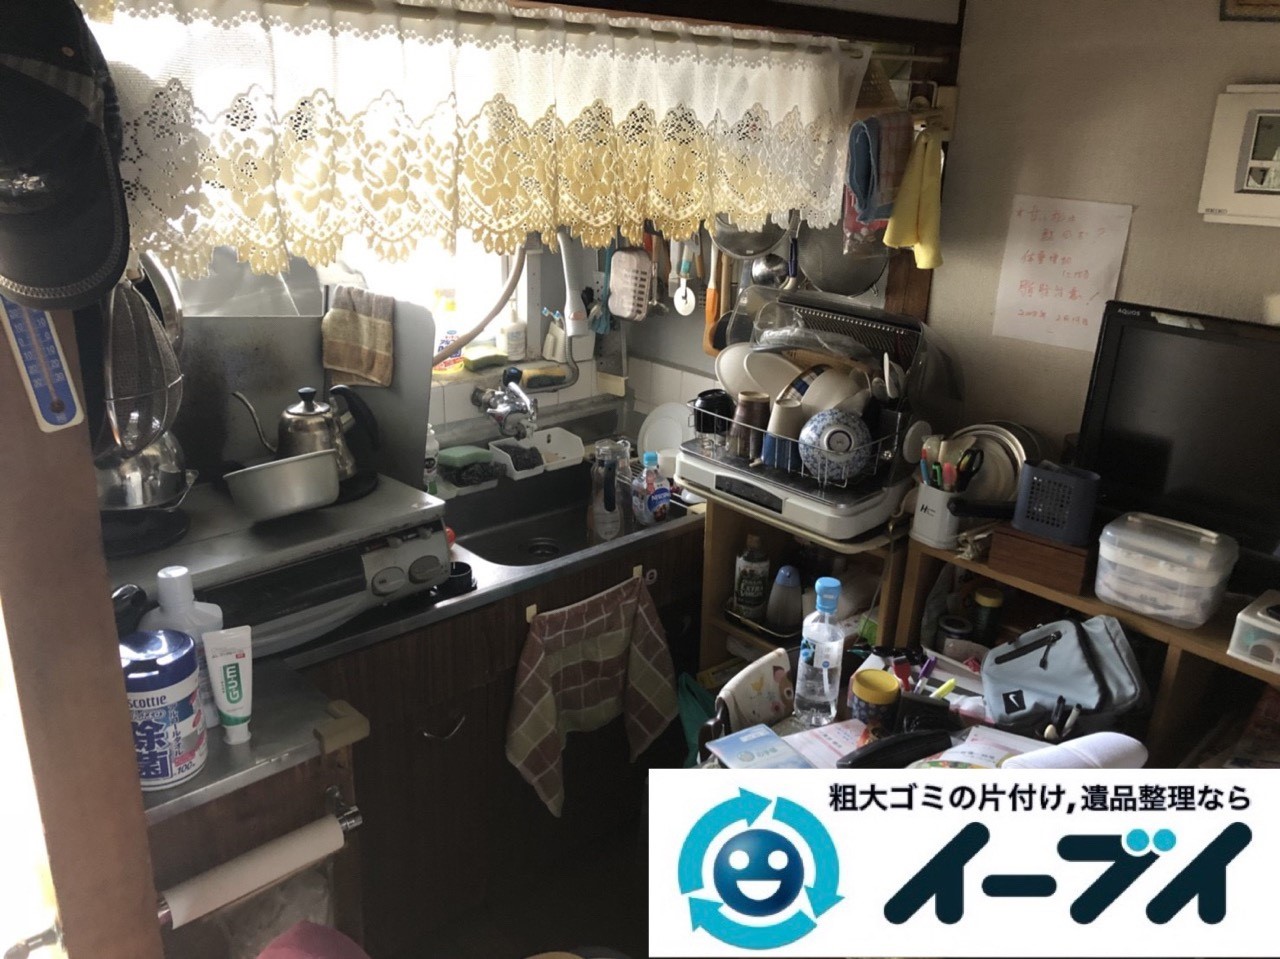 2019年6月11日大阪府大阪市淀川区で引越しに伴い、お家の家財道具一式処分させていただきました。写真2